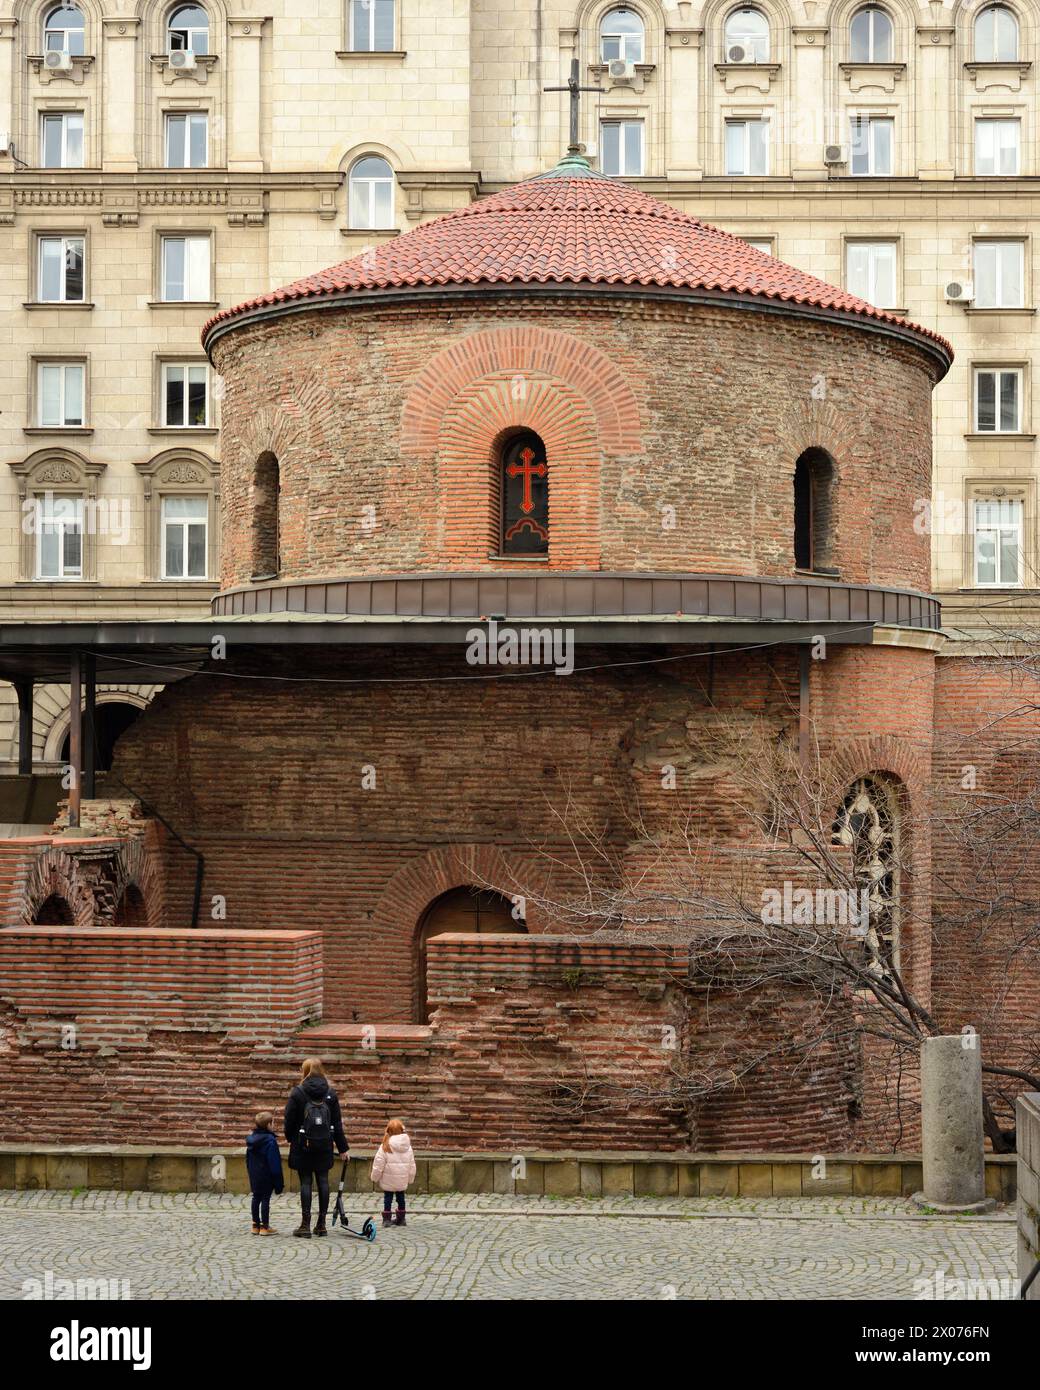 Die Rotunde der St. Georg-Kirche aus dem 3. Jahrhundert ist das älteste Gebäude und Sehenswürdigkeiten in Sofia Bulgarien, Osteuropa, Balkan, EU Stockfoto